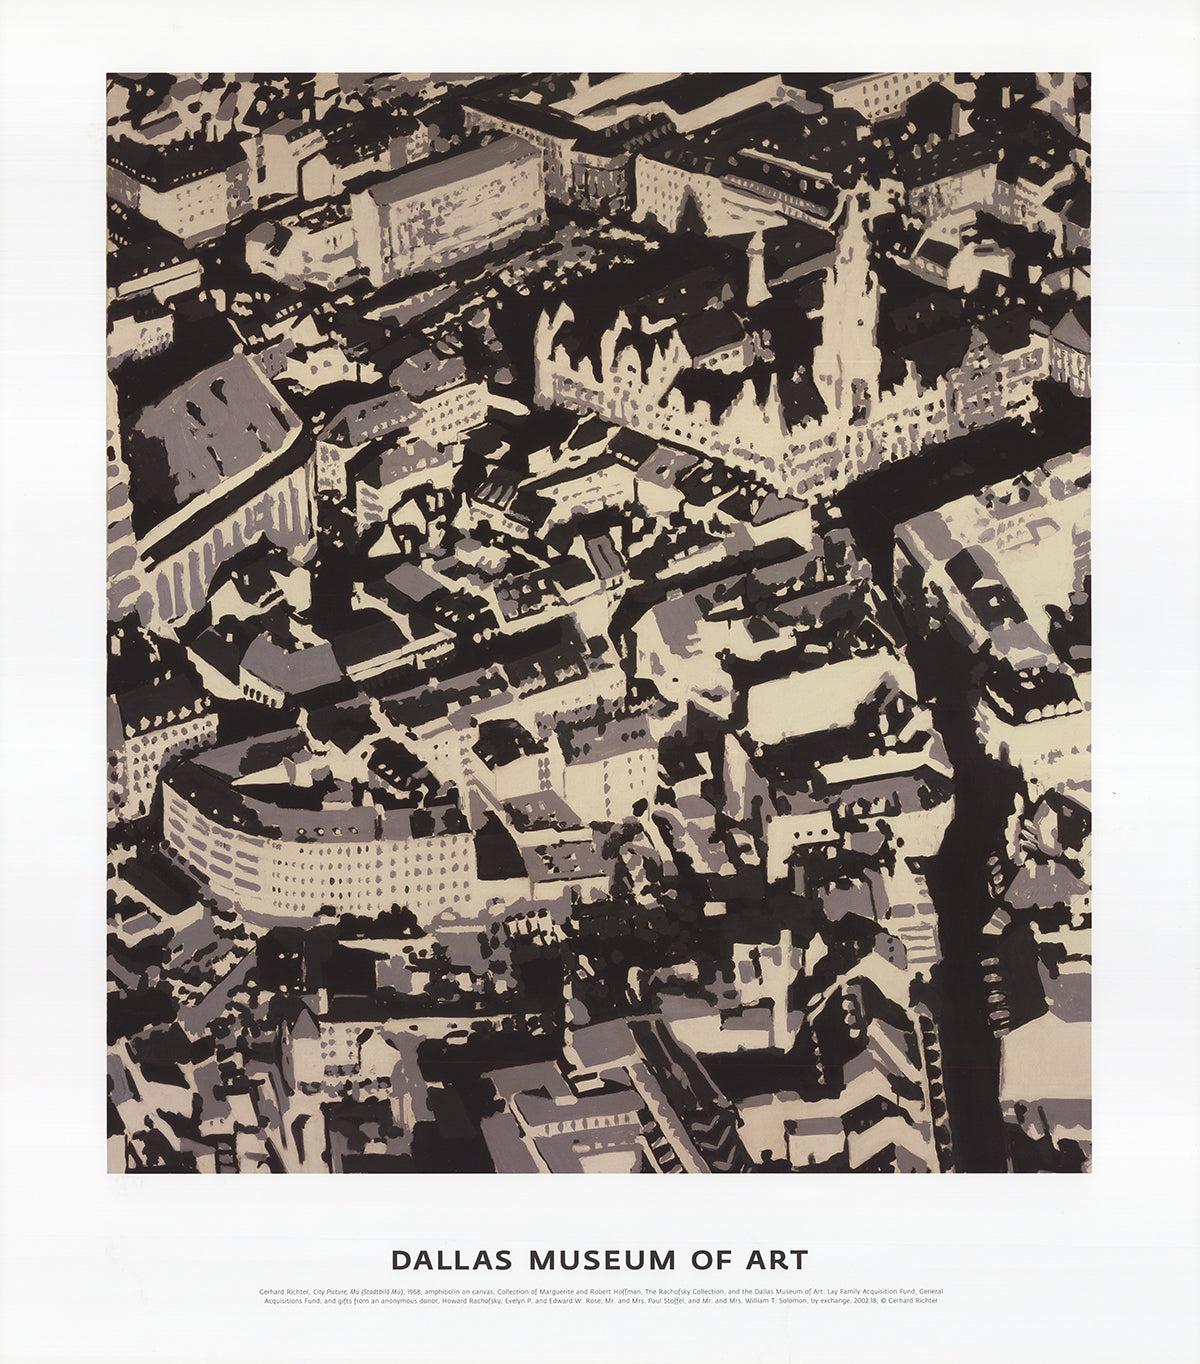 Format du papier : 27.5 x 24 pouces ( 69.85 x 60.96 cm )
Taille de l'image : 21.25 x 19.5 pouces ( 53.975 x 49.53 cm )
Encadré : Non
Condit : A : Mint

Détails supplémentaires : Affiche d'exposition originale du Dallas Museum of Art avec